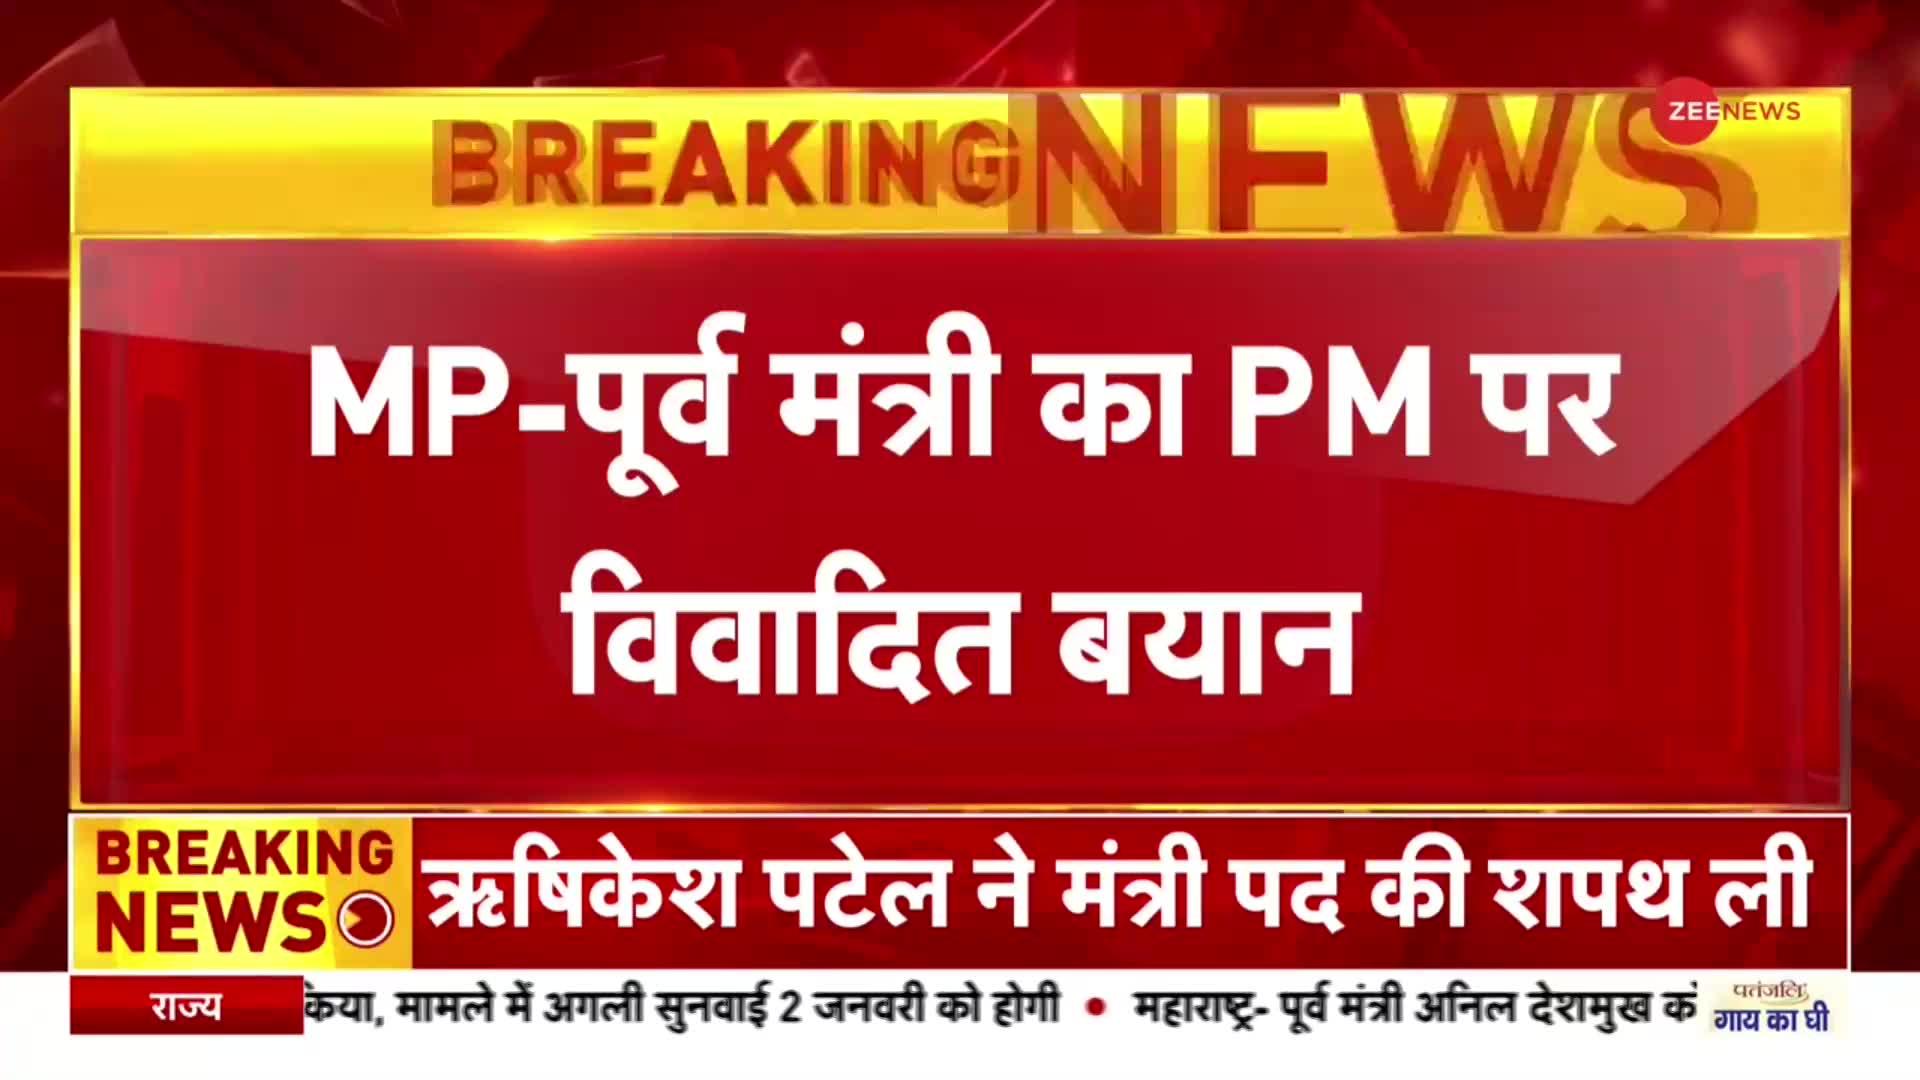 Breaking News : PM Modi की हत्या वाले बयान पर राजा पटेरिया के खिलाफ दर्ज हुई FIR